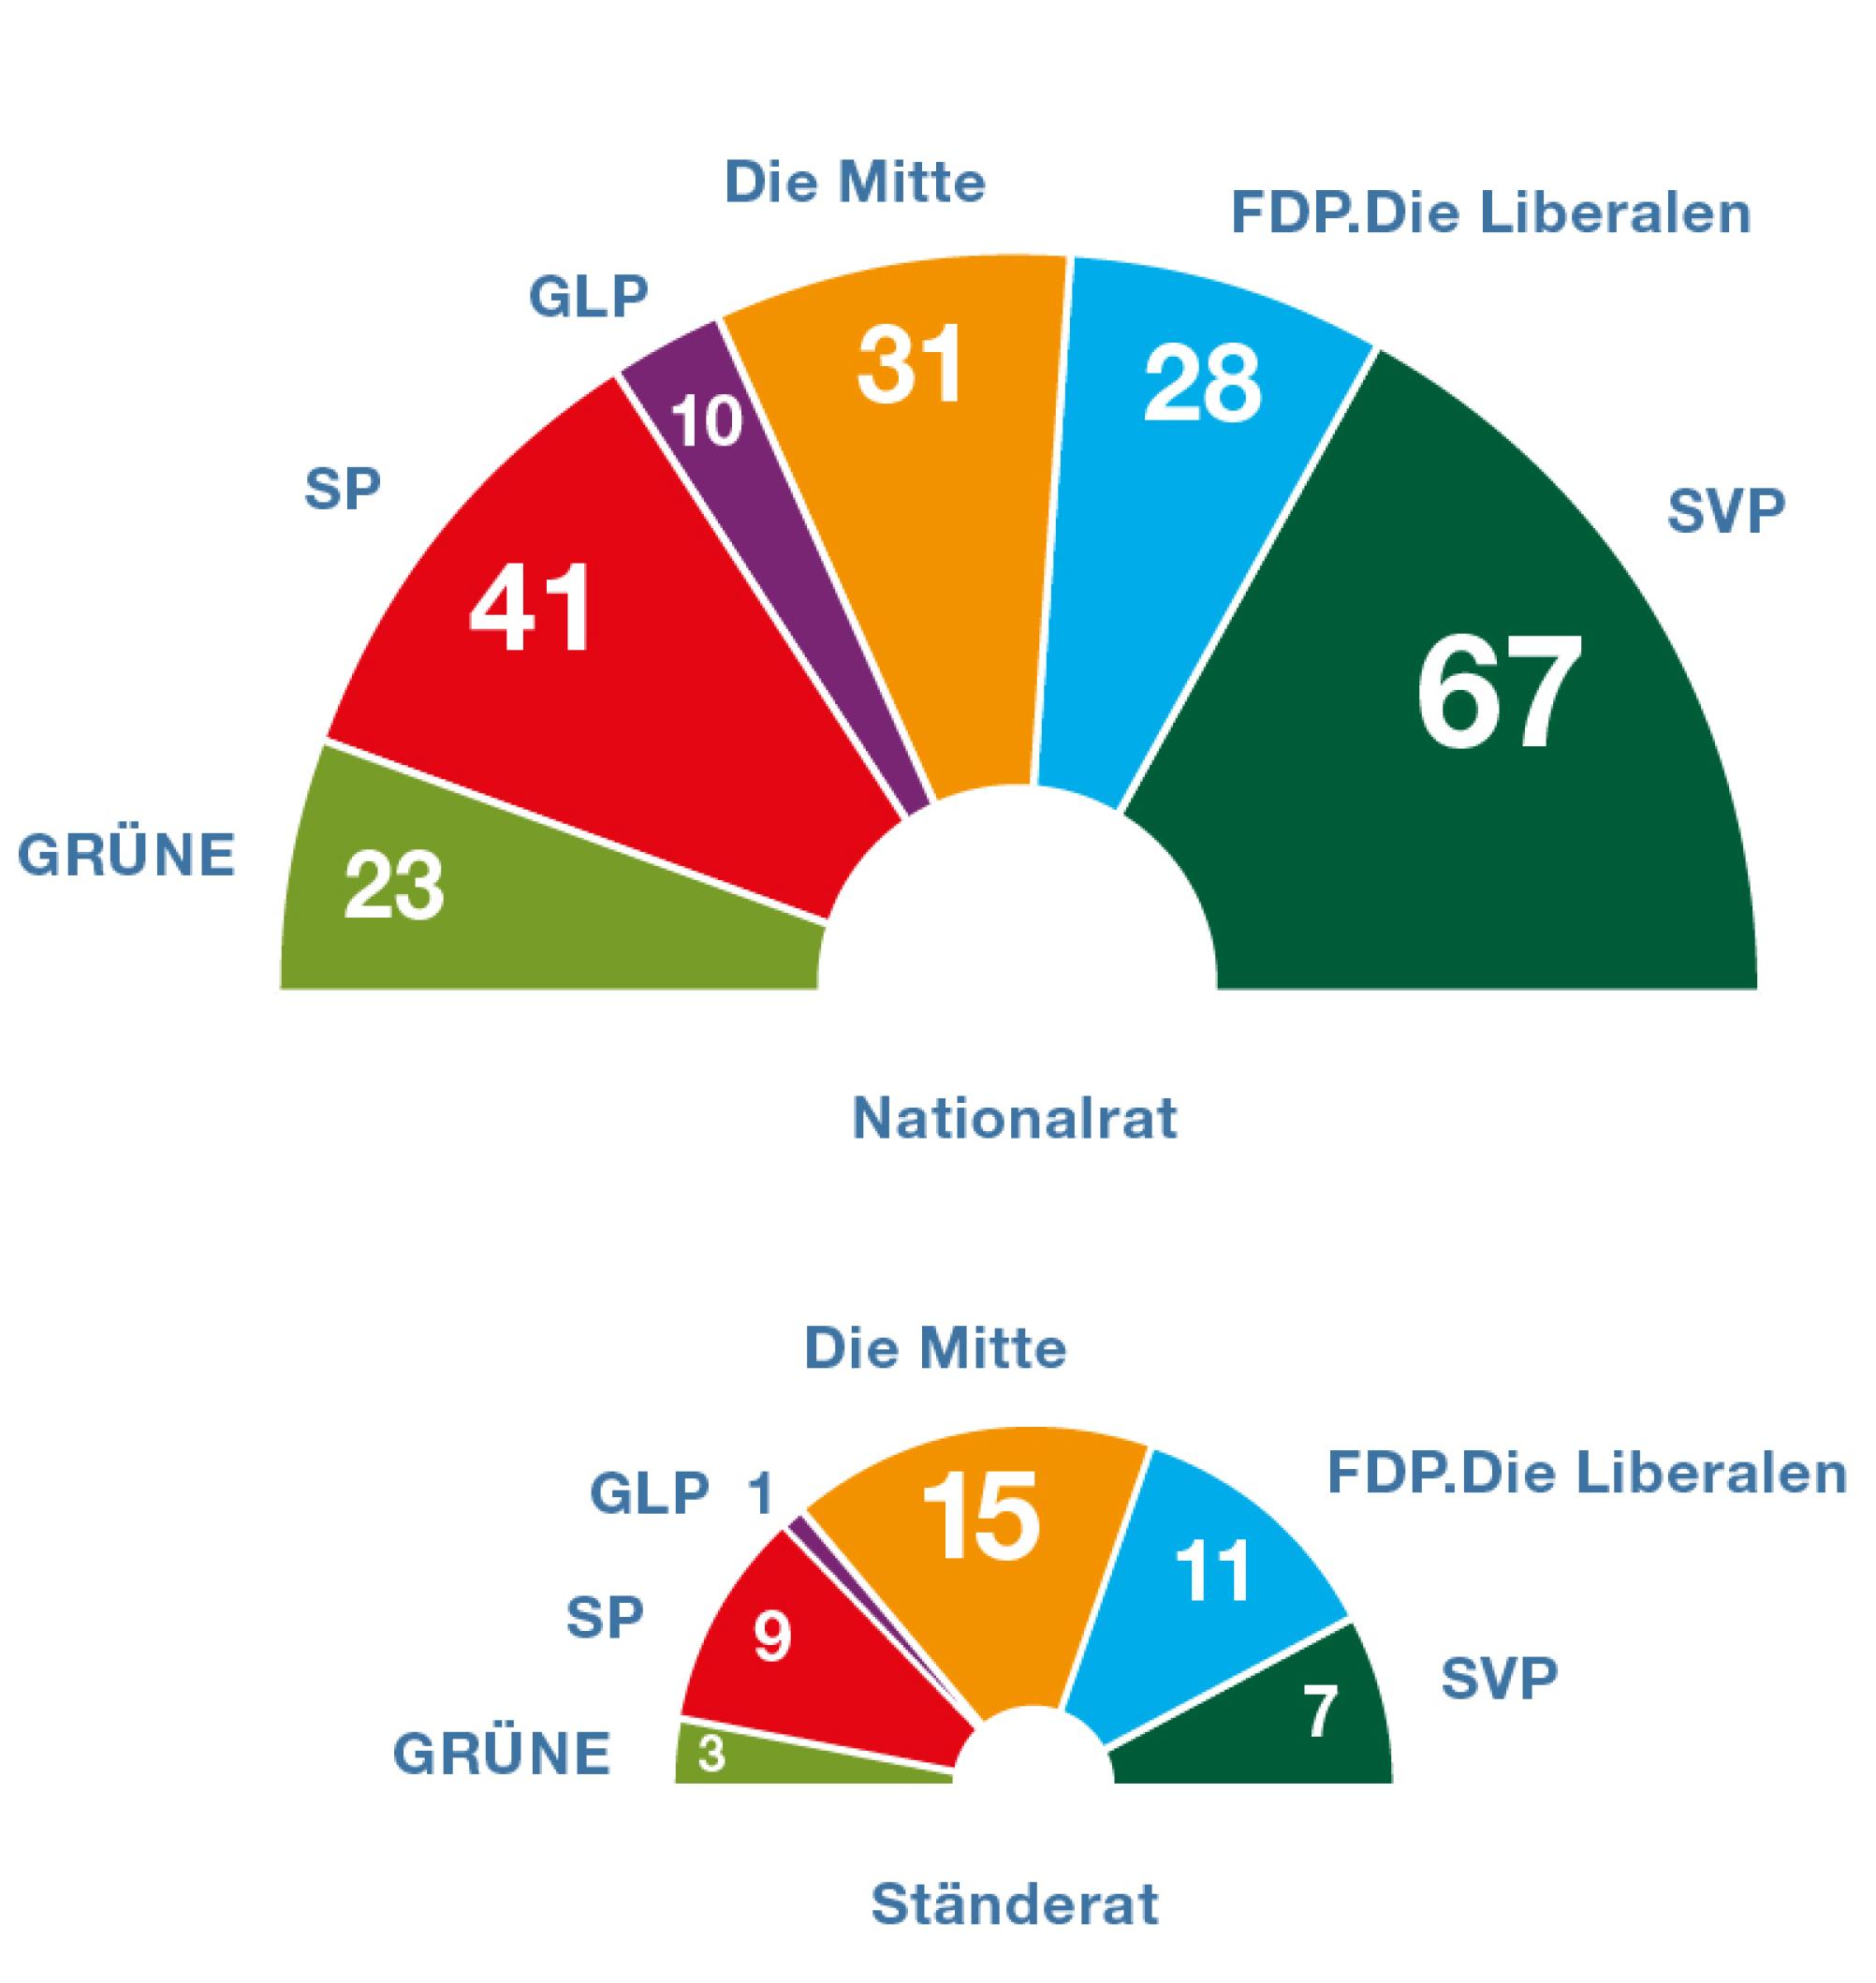 Die Grafik zeigt, dass der Nationalrat aus sechs Fraktionen zusammengesetzt ist. Die SVP-Fraktion ist die stärkste Fraktion, sie hat 67 Mitglieder. Zweitgrösste Fraktion ist die SP-Fraktion mit 41 Mitgliedern. Dann kommen die Mitte-Fraktion mit 31 Mitgliedern, die FDP-Fraktion mit 28 Mitgliedern und die Grüne Fraktion mit 23 Mitgliedern. Kleinste Fraktion ist die Grünliberale Fraktion mit 10 Mitgliedern. Die Grafik zeigt, dass der Ständerat aus sechs Fraktionen zusammengesetzt ist. Die stärksten Fraktionen sind die Mitte-Fraktion mit 15 Mitgliedern und die FDP-Fraktion mit 11 Mitgliedern. Die SP-Fraktion hat 9 Mitglieder, die SVP-Fraktion 7 Mitglieder und die Grüne-Fraktion 5 Mitglieder.